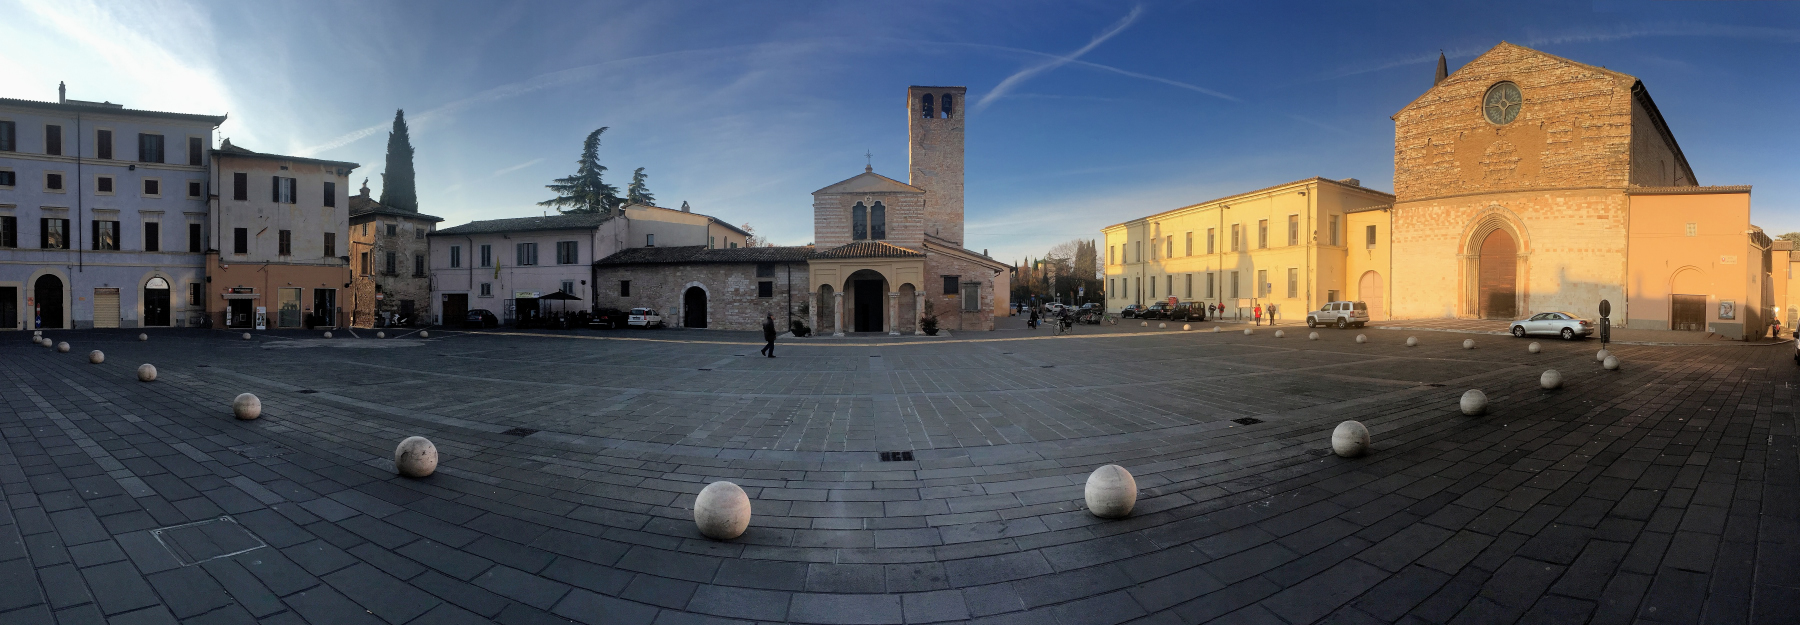 Piazza San Domenico - Foligno...